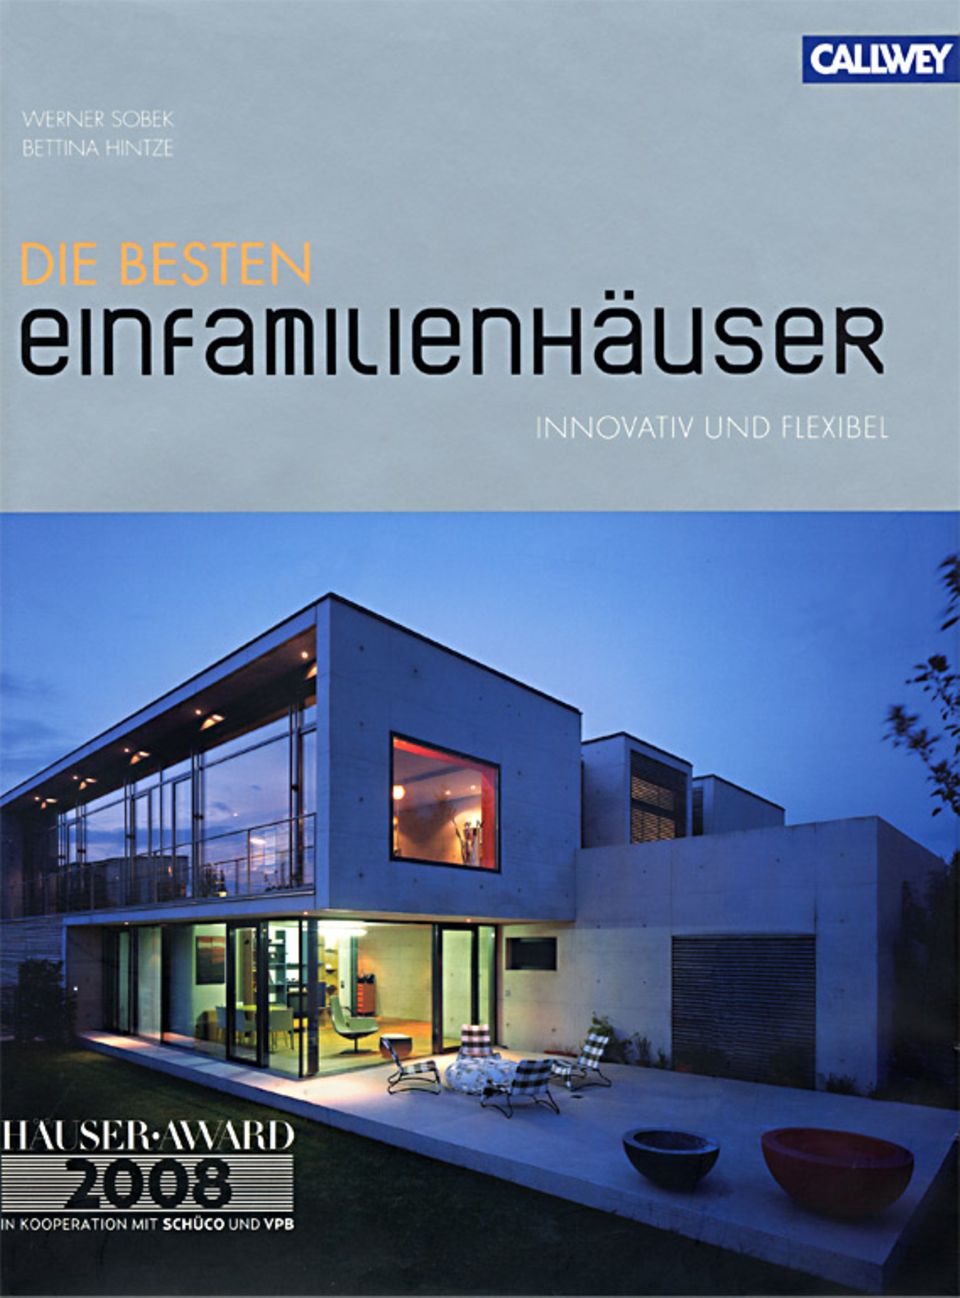 HÄUSER-AWARD 2008: Architektur für die Zukunft